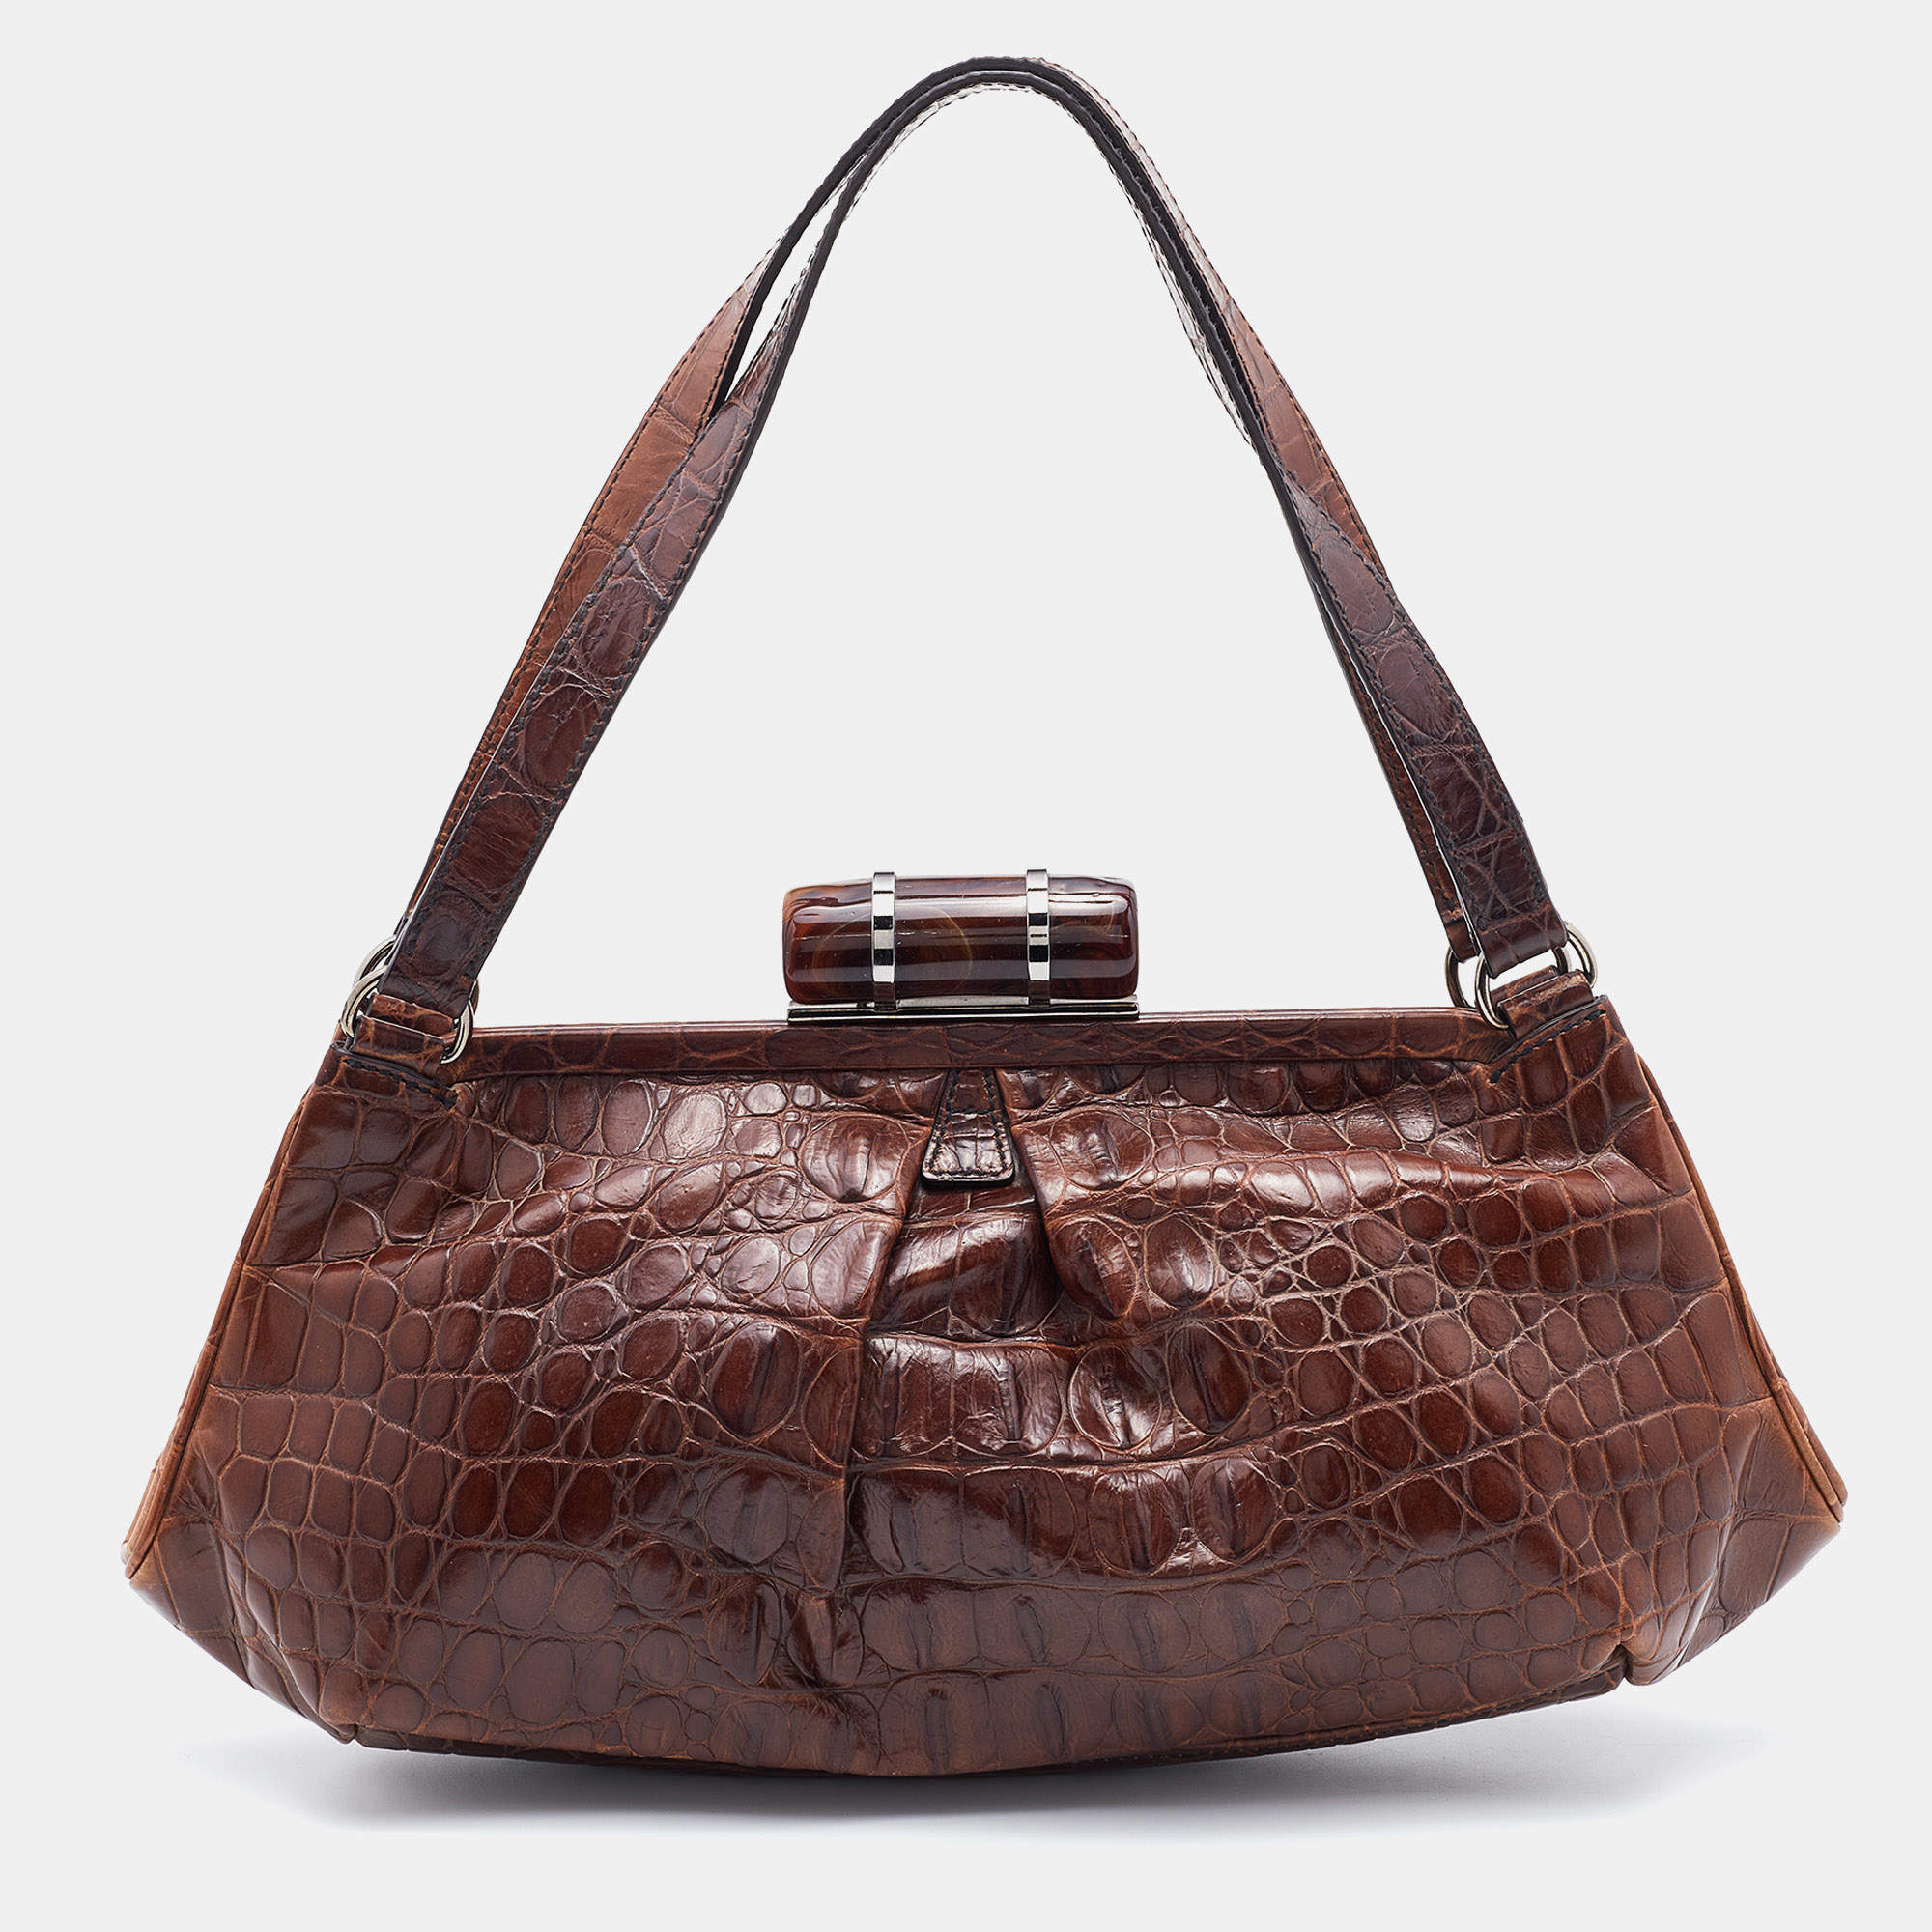 Miu Miu Vintage-Look Frame Handbag